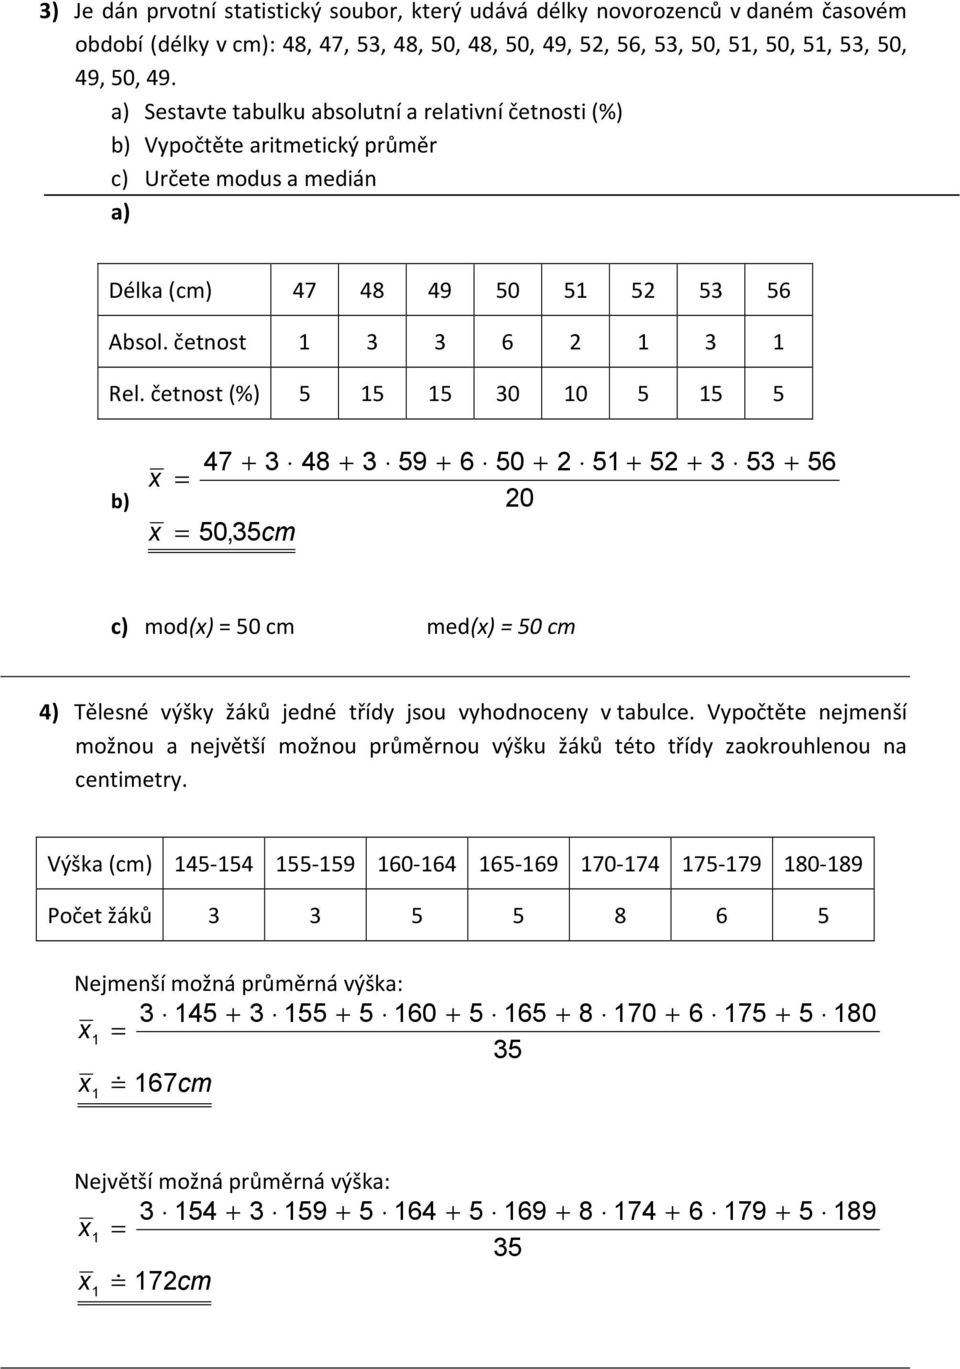 četnost (%) 5 5 5 30 0 5 5 5 b) = = 47 3 48 50,35cm 3 59 6 50 20 2 5 52 3 53 56 c) mod() = 50 cm med() = 50 cm 4) Tělesné výšky žáků jedné třídy jsou vyhodnoceny v tabulce.